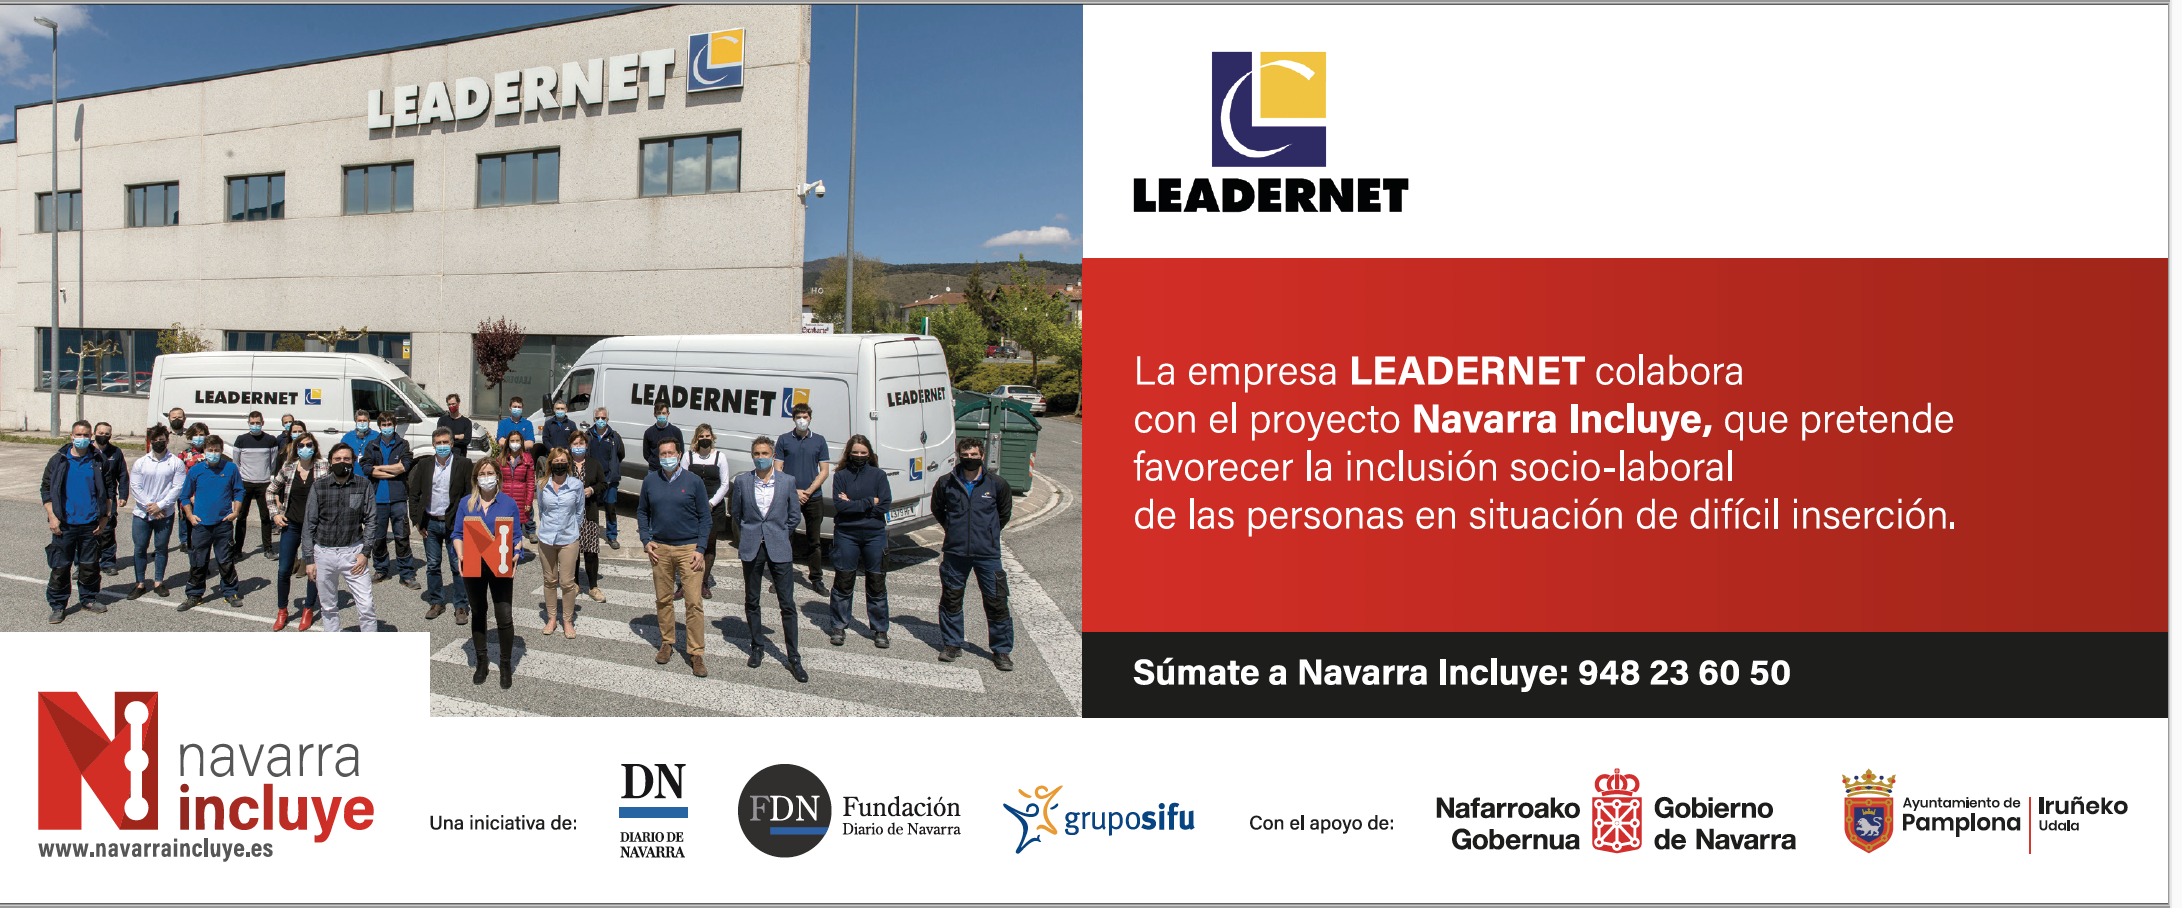 Leadernet colabora con el proyecto Navarra Incluye